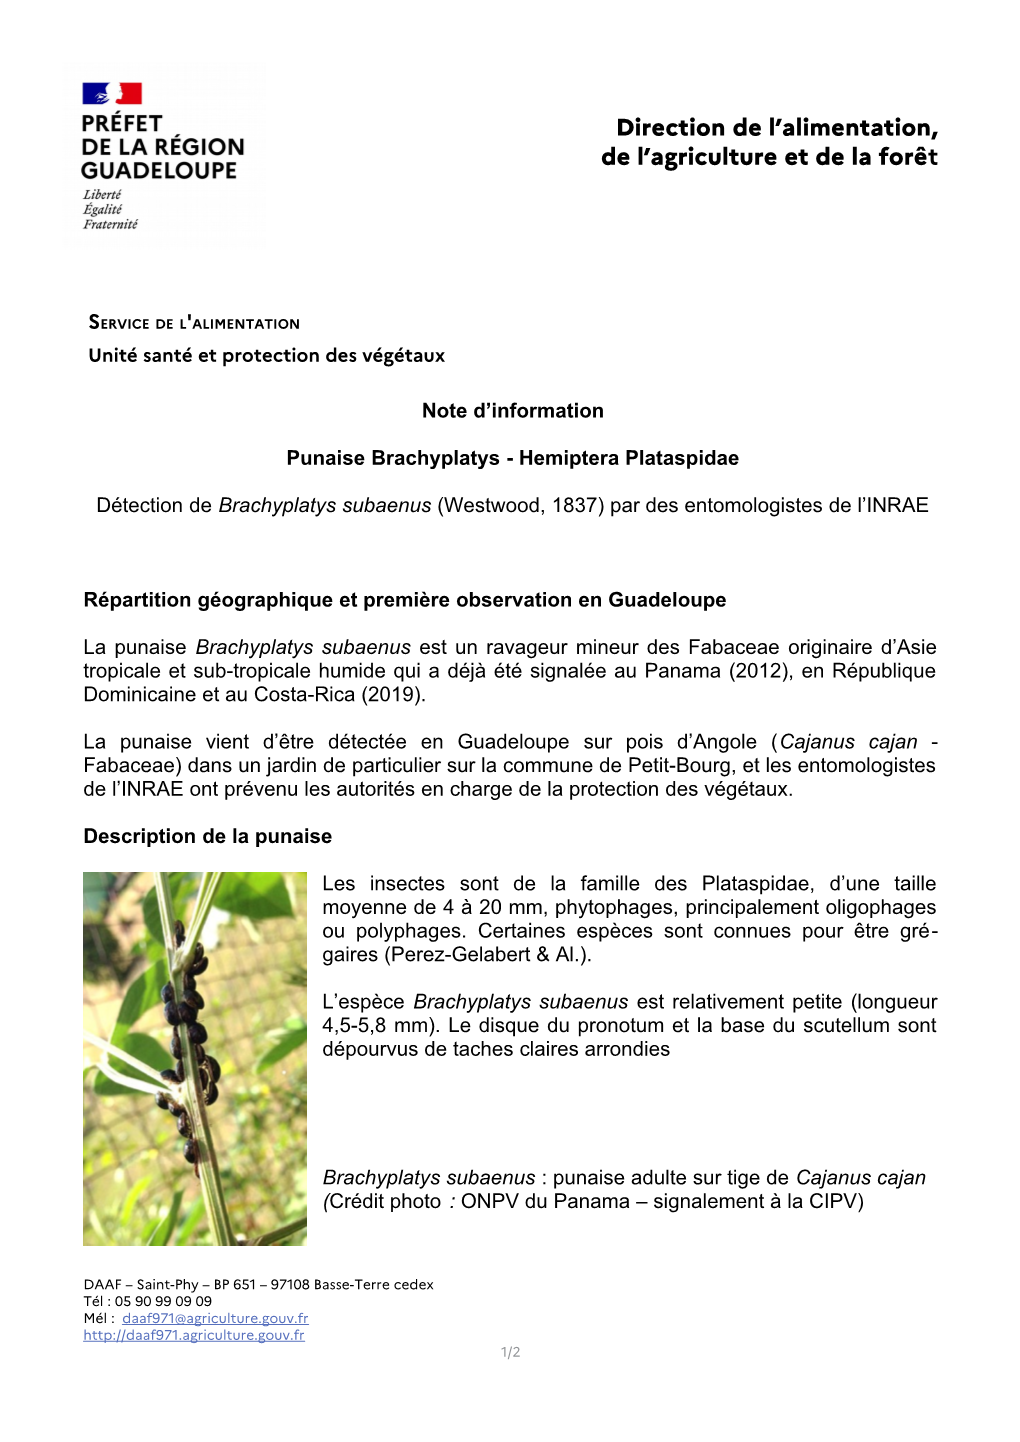 Direction De L'alimentation, De L'agriculture Et De La Forêt